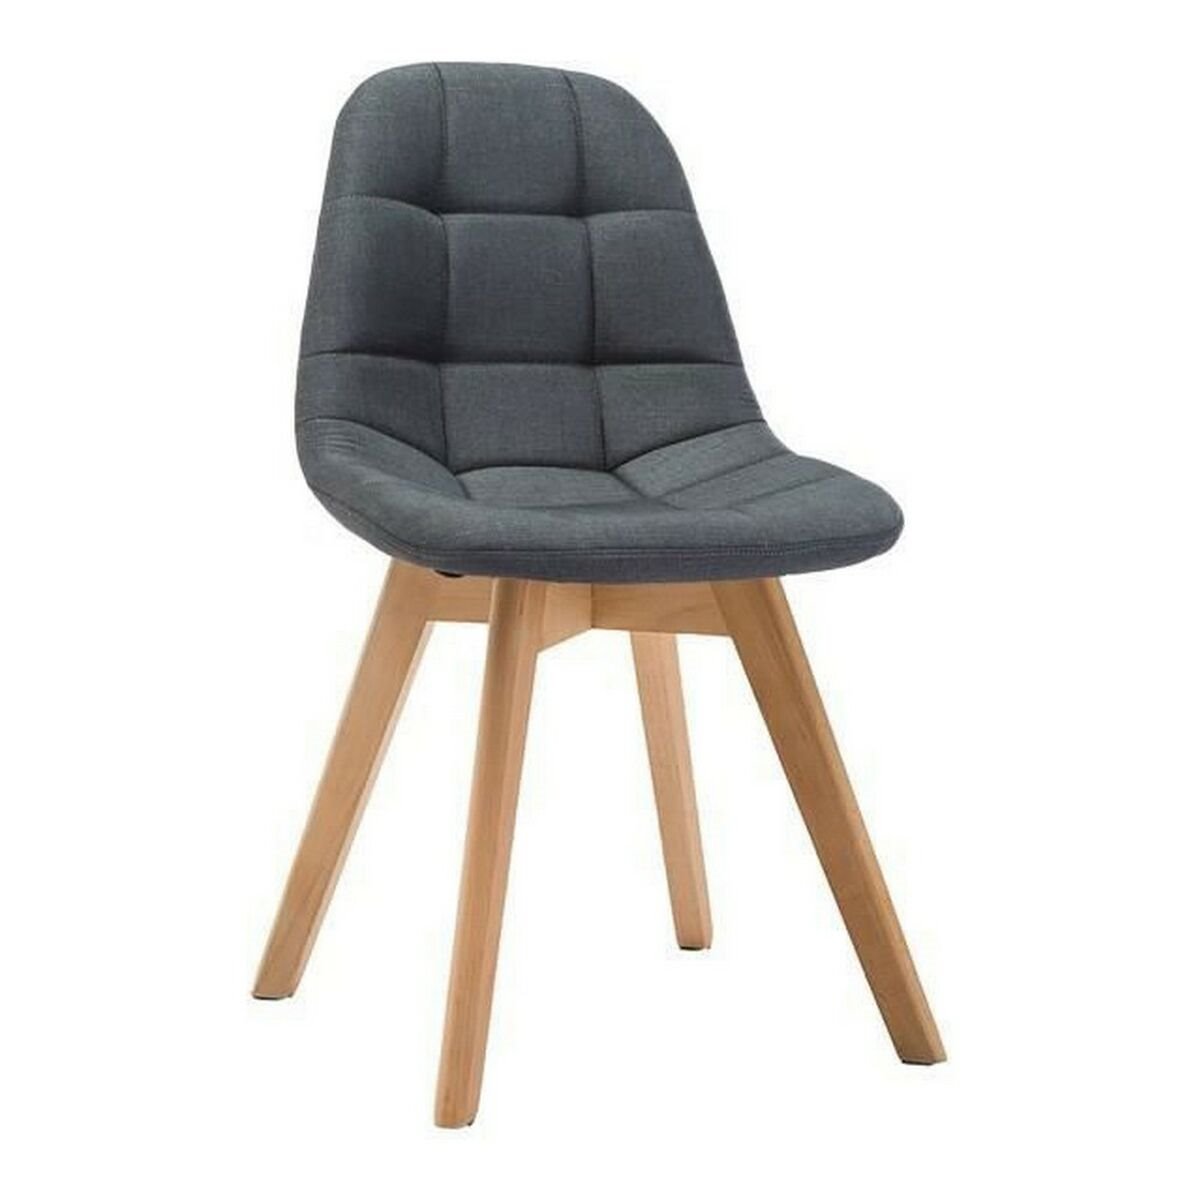 Pack 4 sillas de comedor Hall Marrón, Gris 44,5 x 84 x 54,5 cm - Conforama